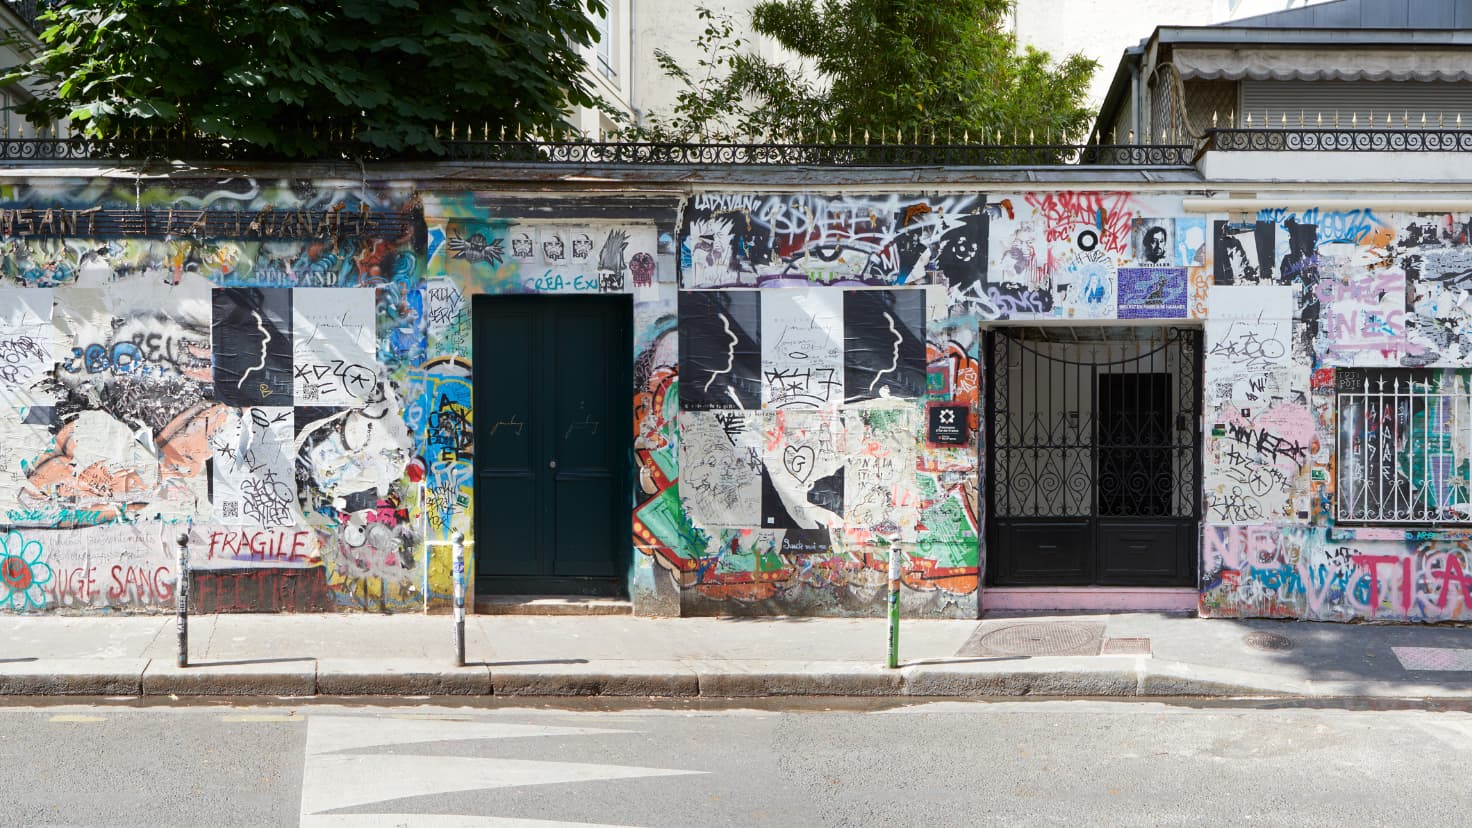 Après 30 ans de fermeture, la maison de Serge Gainsbourg ouvre enfin ses portes au public